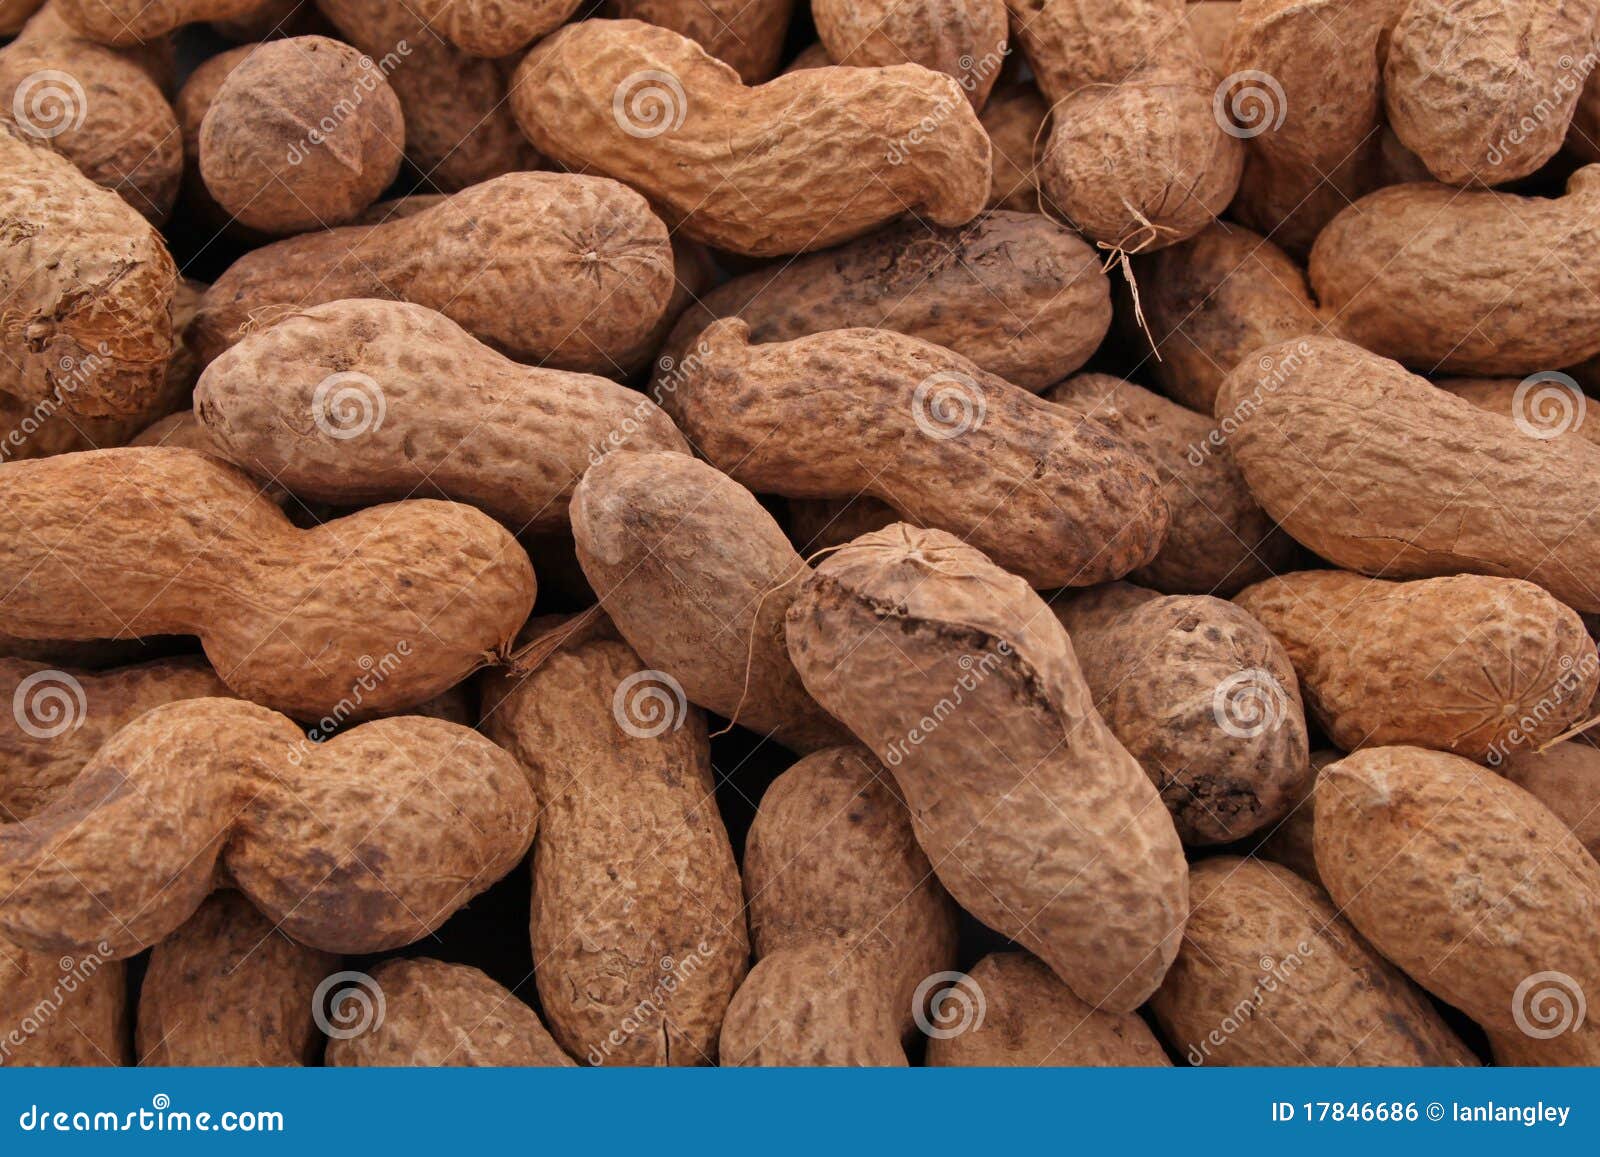 peanut or groundnut